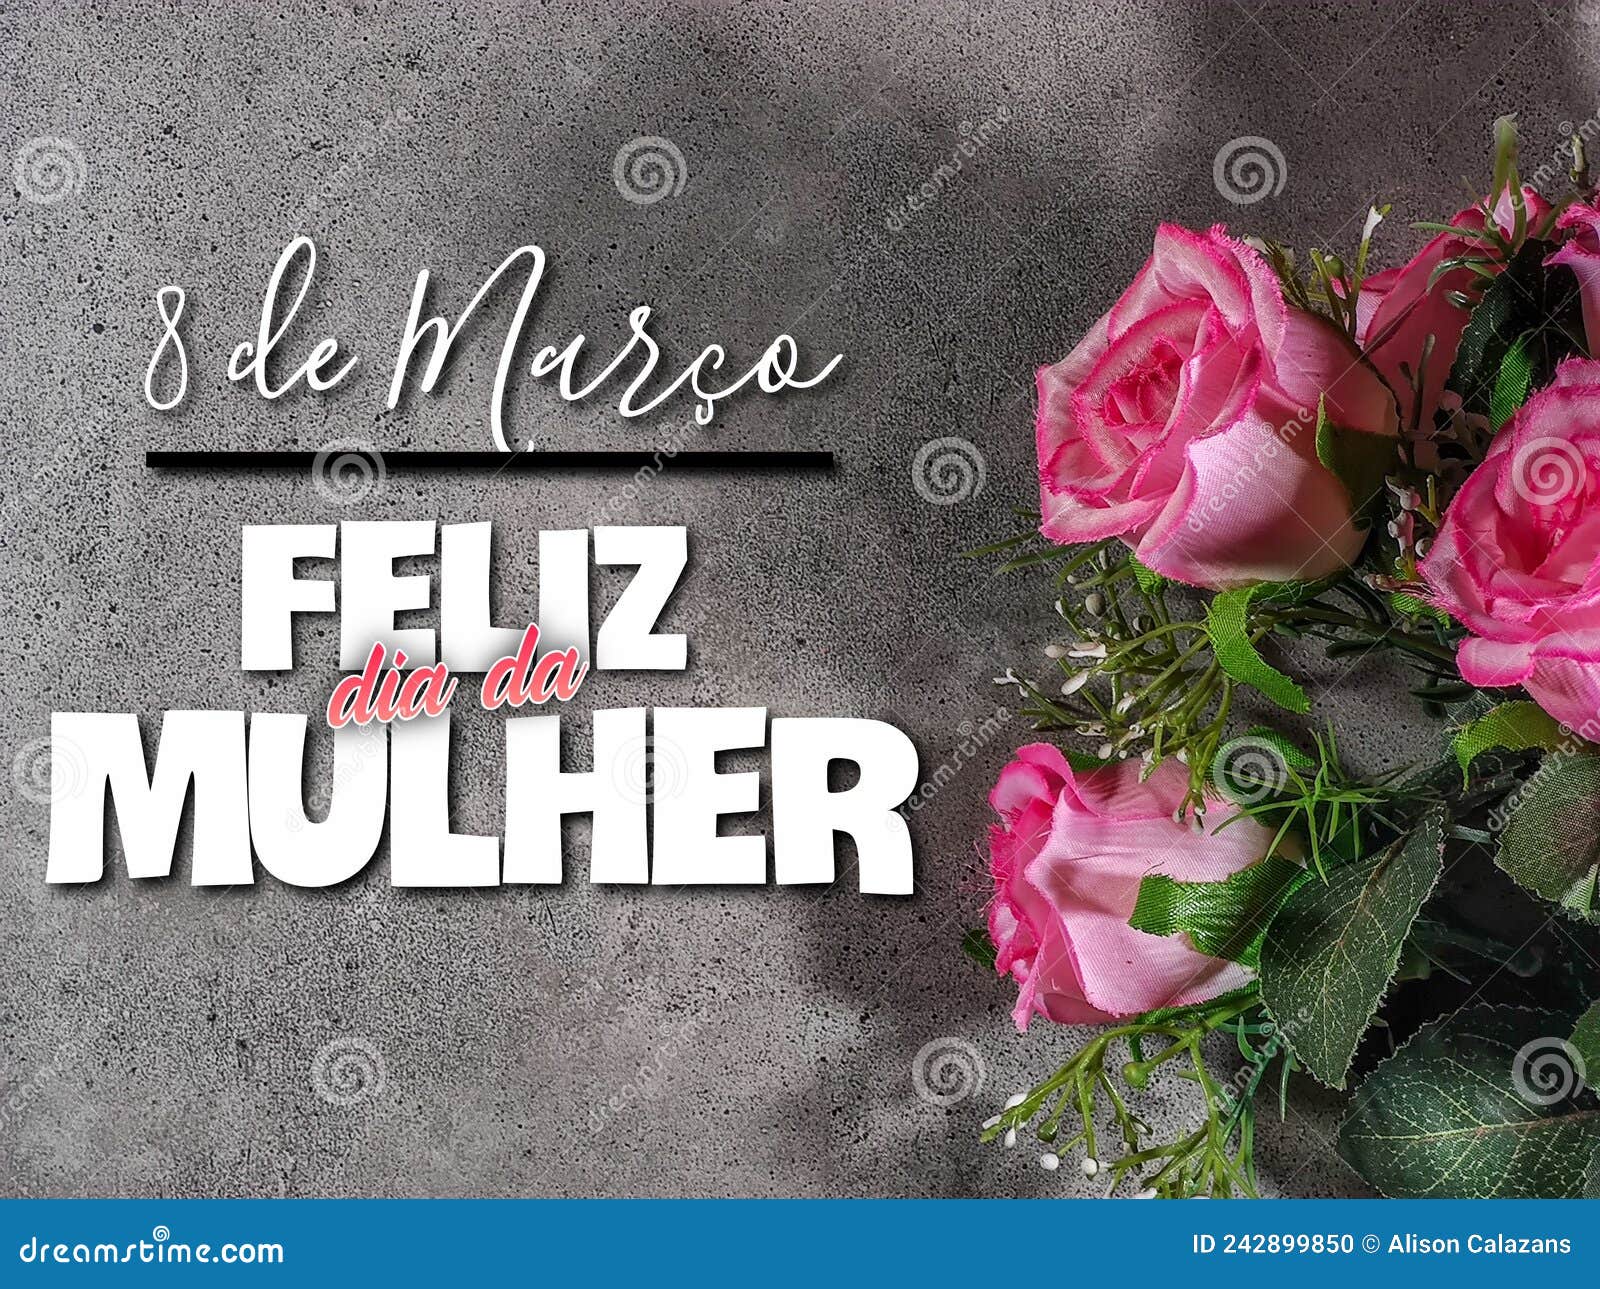 woman's day. title in brazilian portuguese written "8 de marÃÂ§o, feliz dia da mulher".